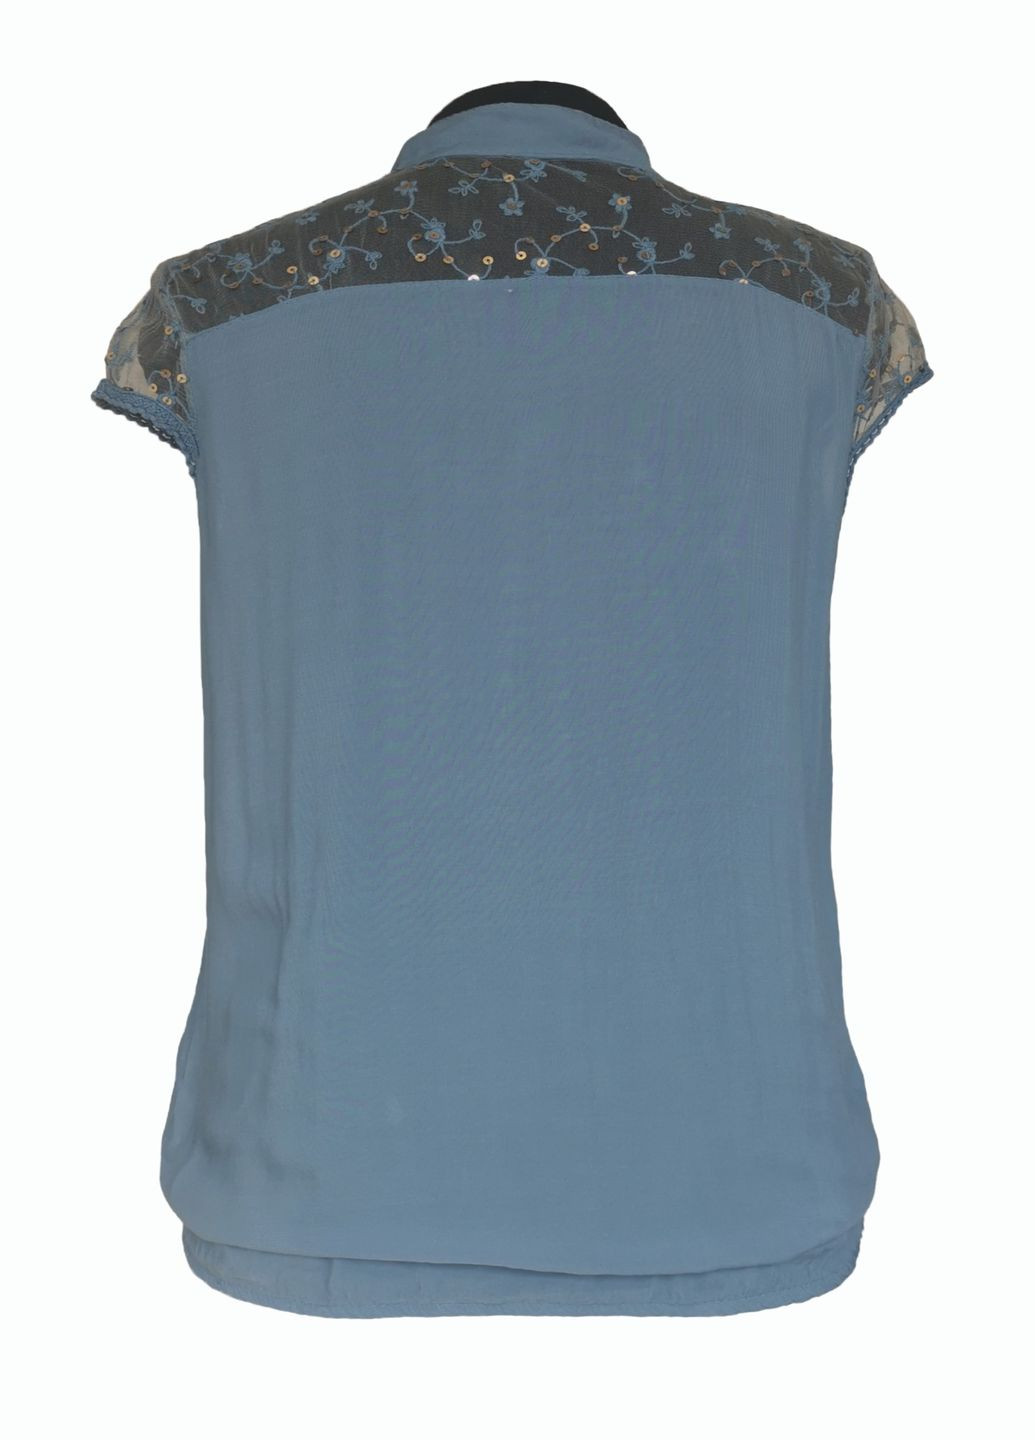 Синяя летняя блузка женская летняя вискозная с коротким рукавом и кружевом джинс No Brand